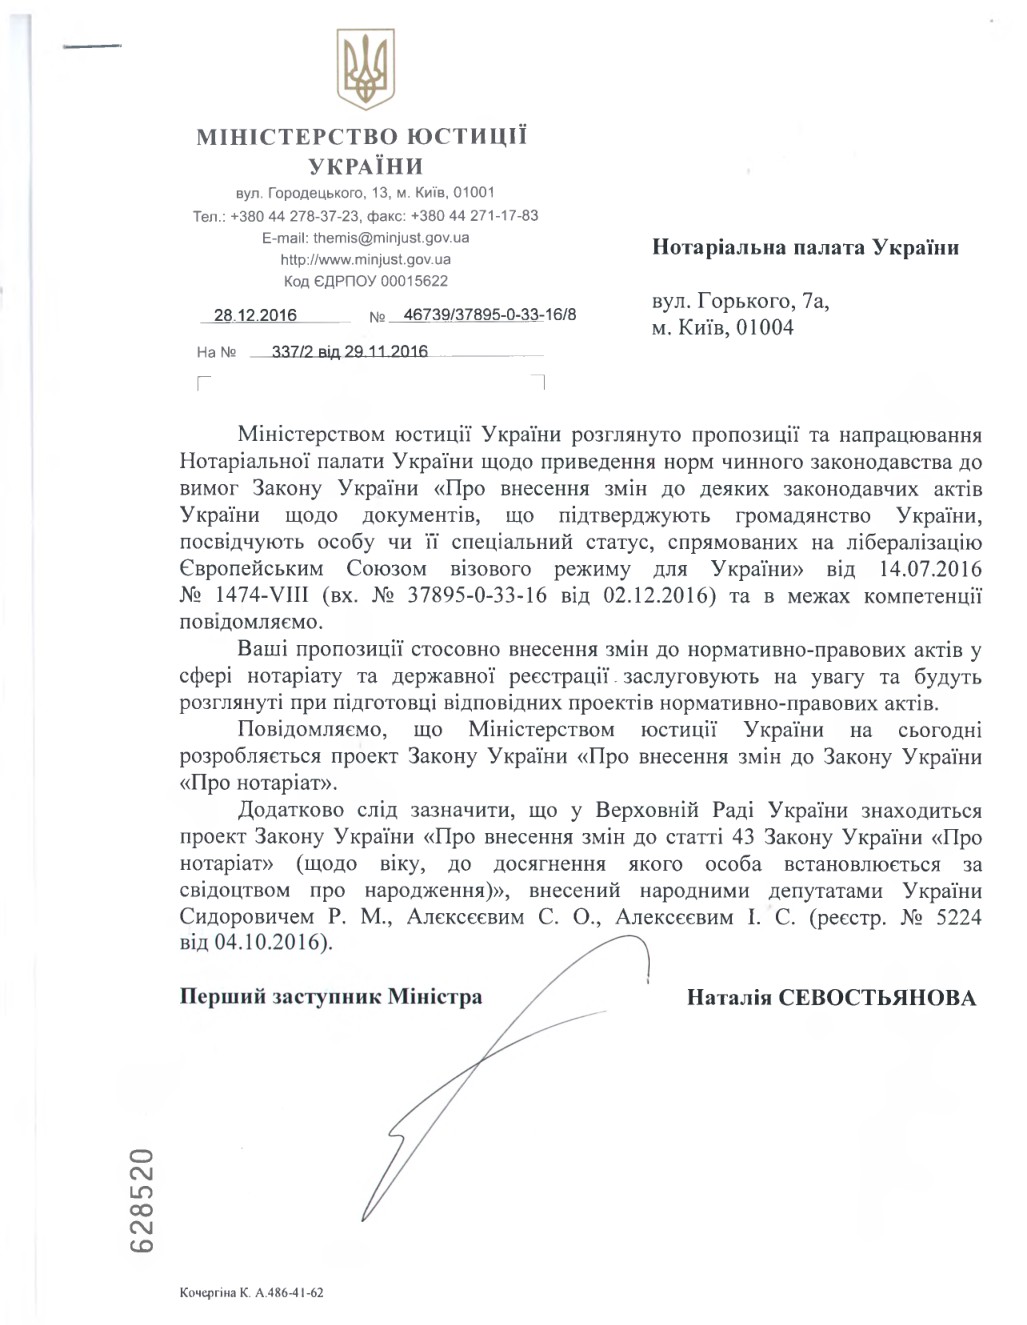 Лист Міністерства юстиції України про розгляд пропозицій та напрацюваннь НПУ стосовно внесення змін до нормативно-правових актів у сфері нотаріату та державної реєстрації.
